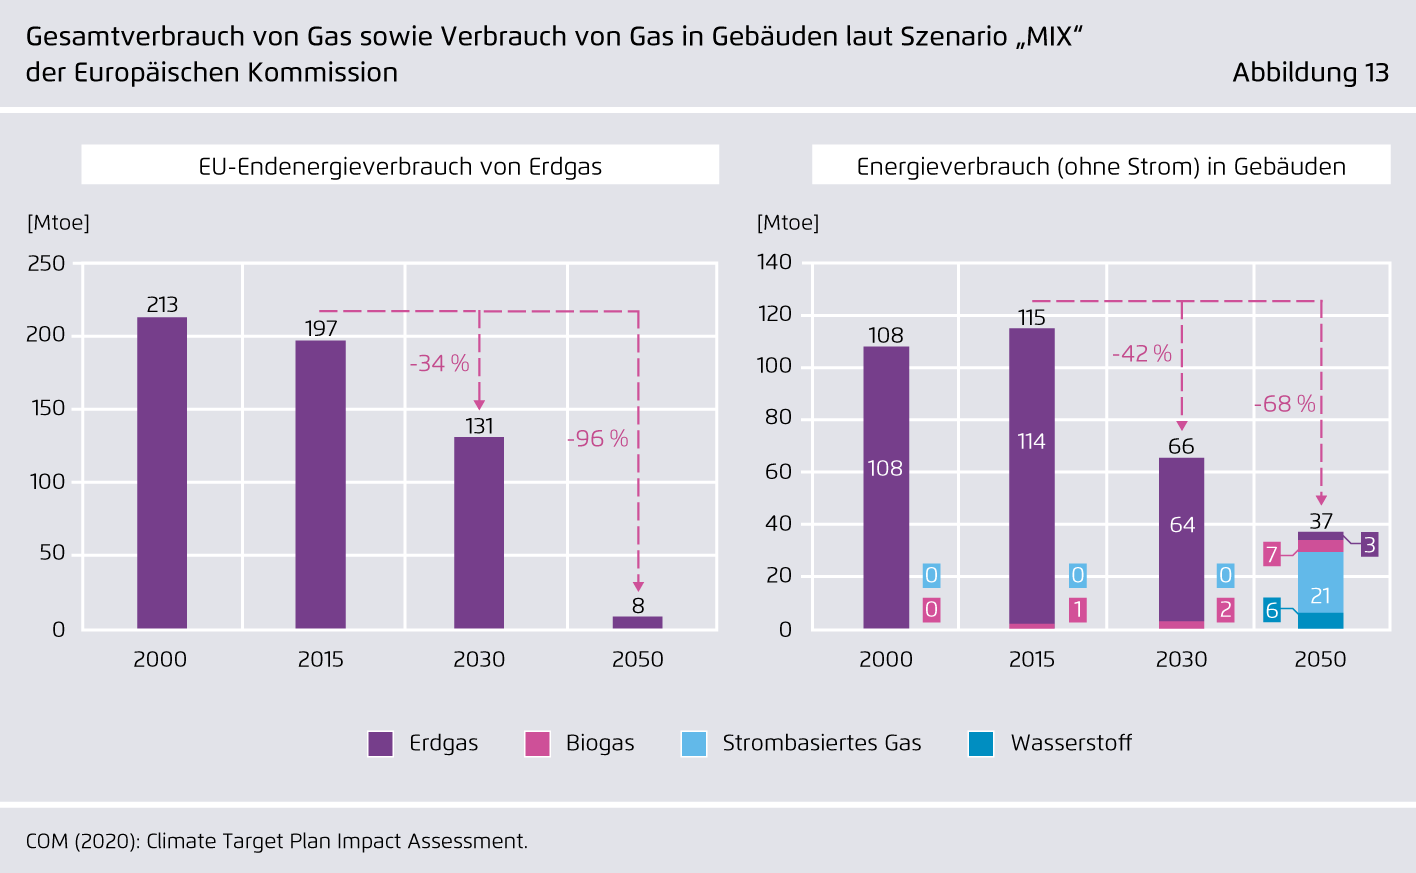 Preview for Gesamtverbrauch von Gas sowie Verbrauch von Gas in Gebäuden laut Szenario "MIX" der Europäischen Kommission